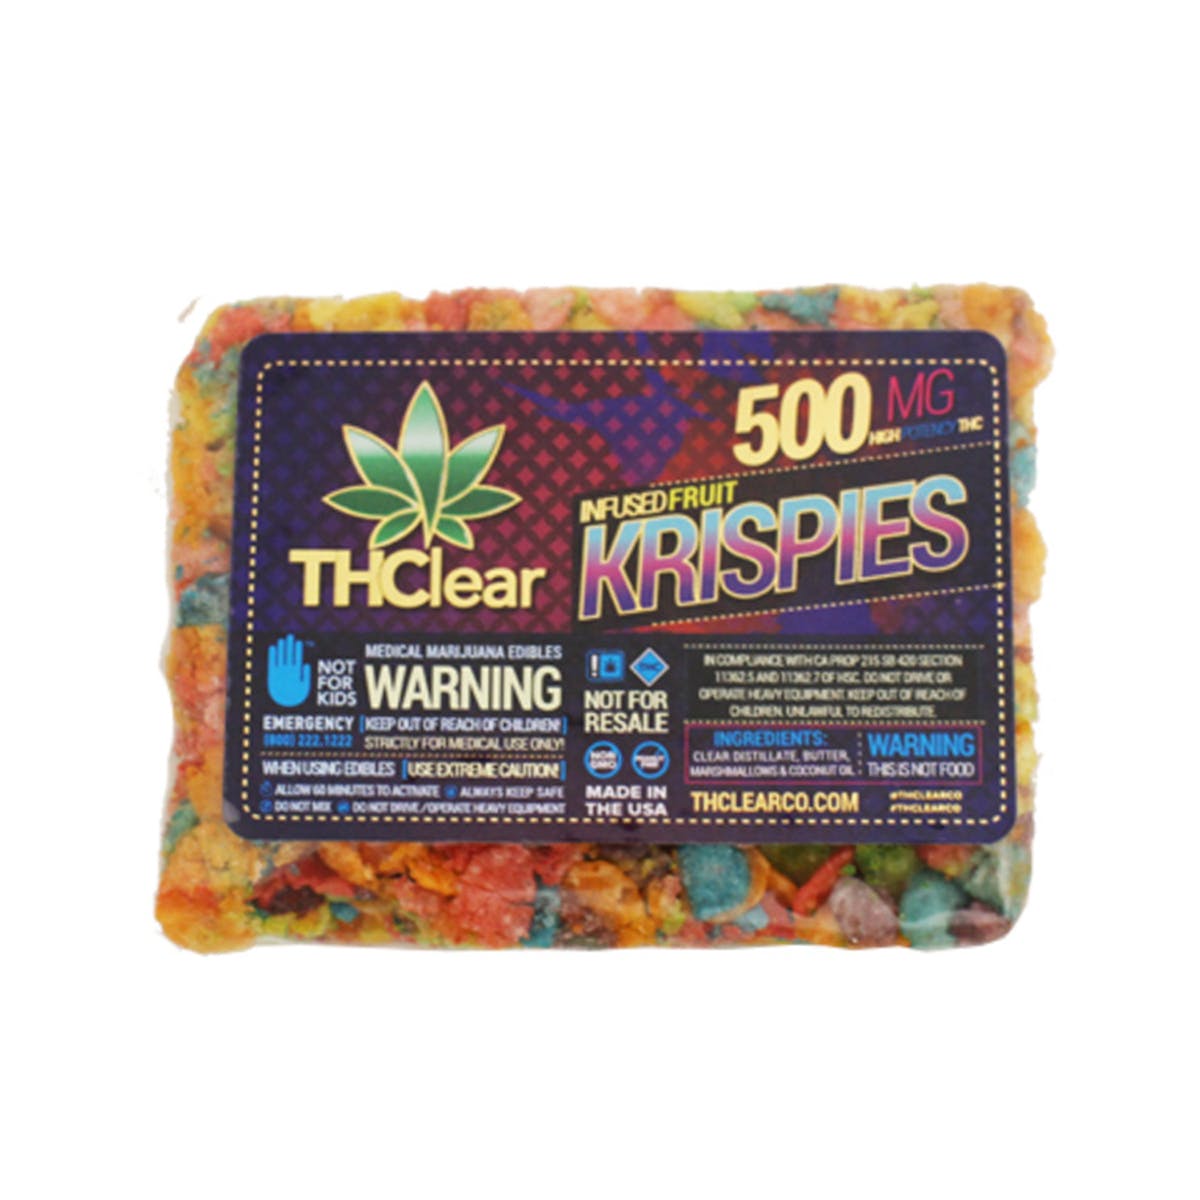 marijuana-dispensaries-mr-steal-your-patients-2419-cap-in-whittier-fruit-krispies-cereal-bar-500mg